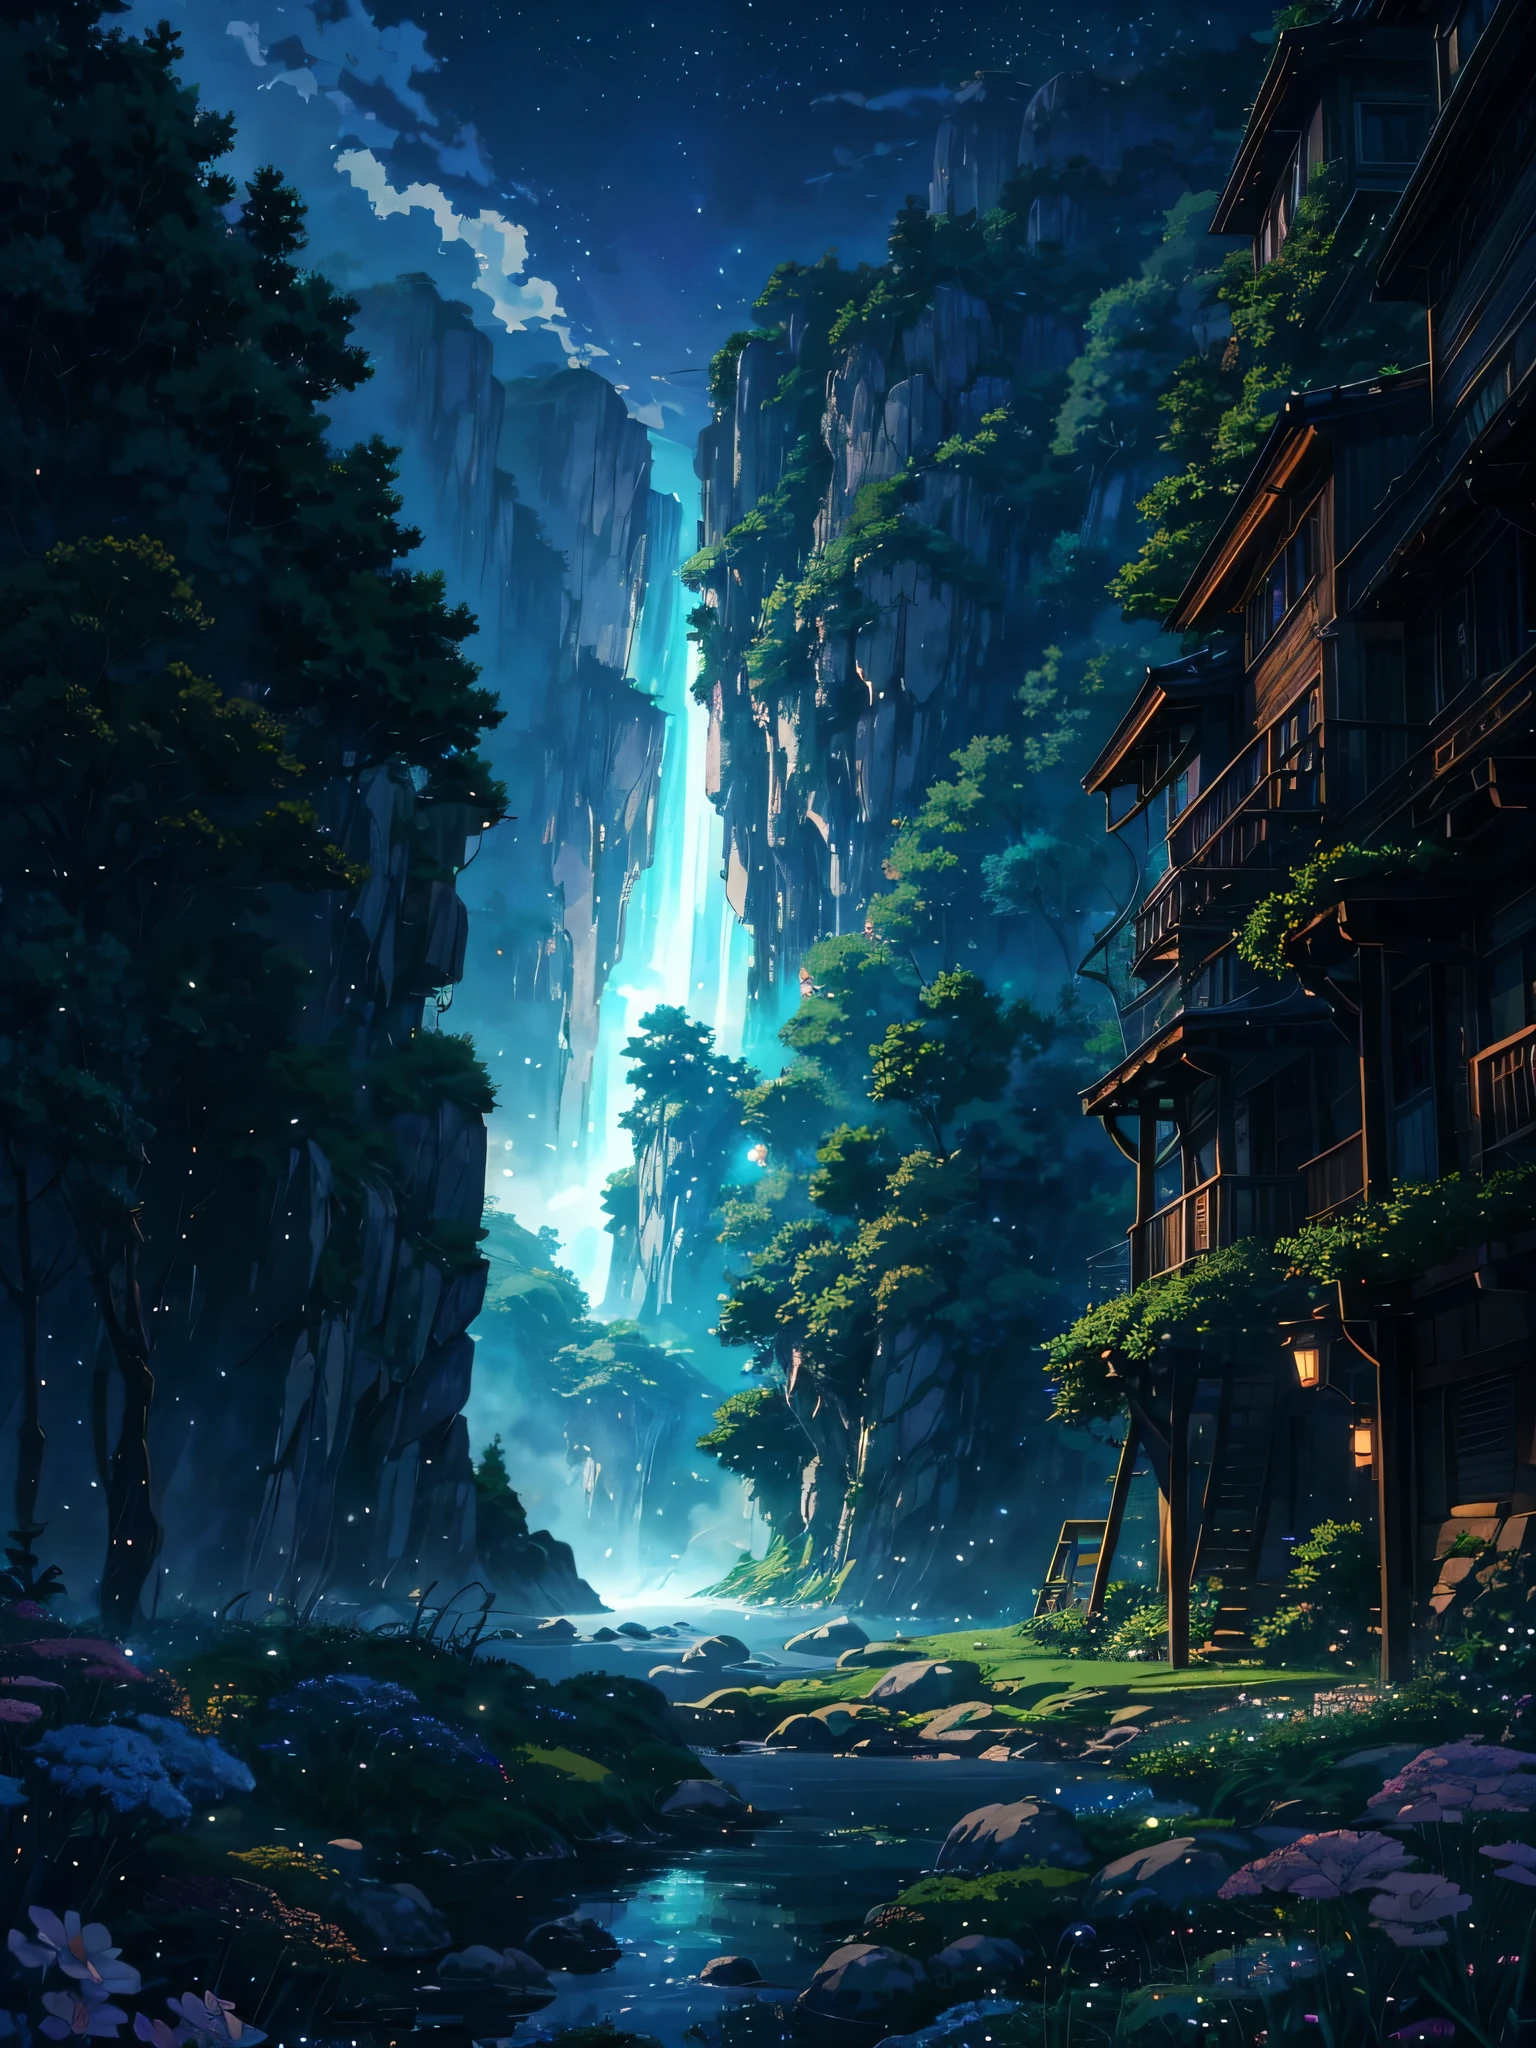 Создать разрешение 4K (400x900) изображение в очаровательном аниме-стиле студии Ghibli, изображая типичный мир неба, который никто не видел и не представлял себе, Подчеркните эстетику Studio Ghibli мягкими цветами.:: иллюстрация --ar 4:9